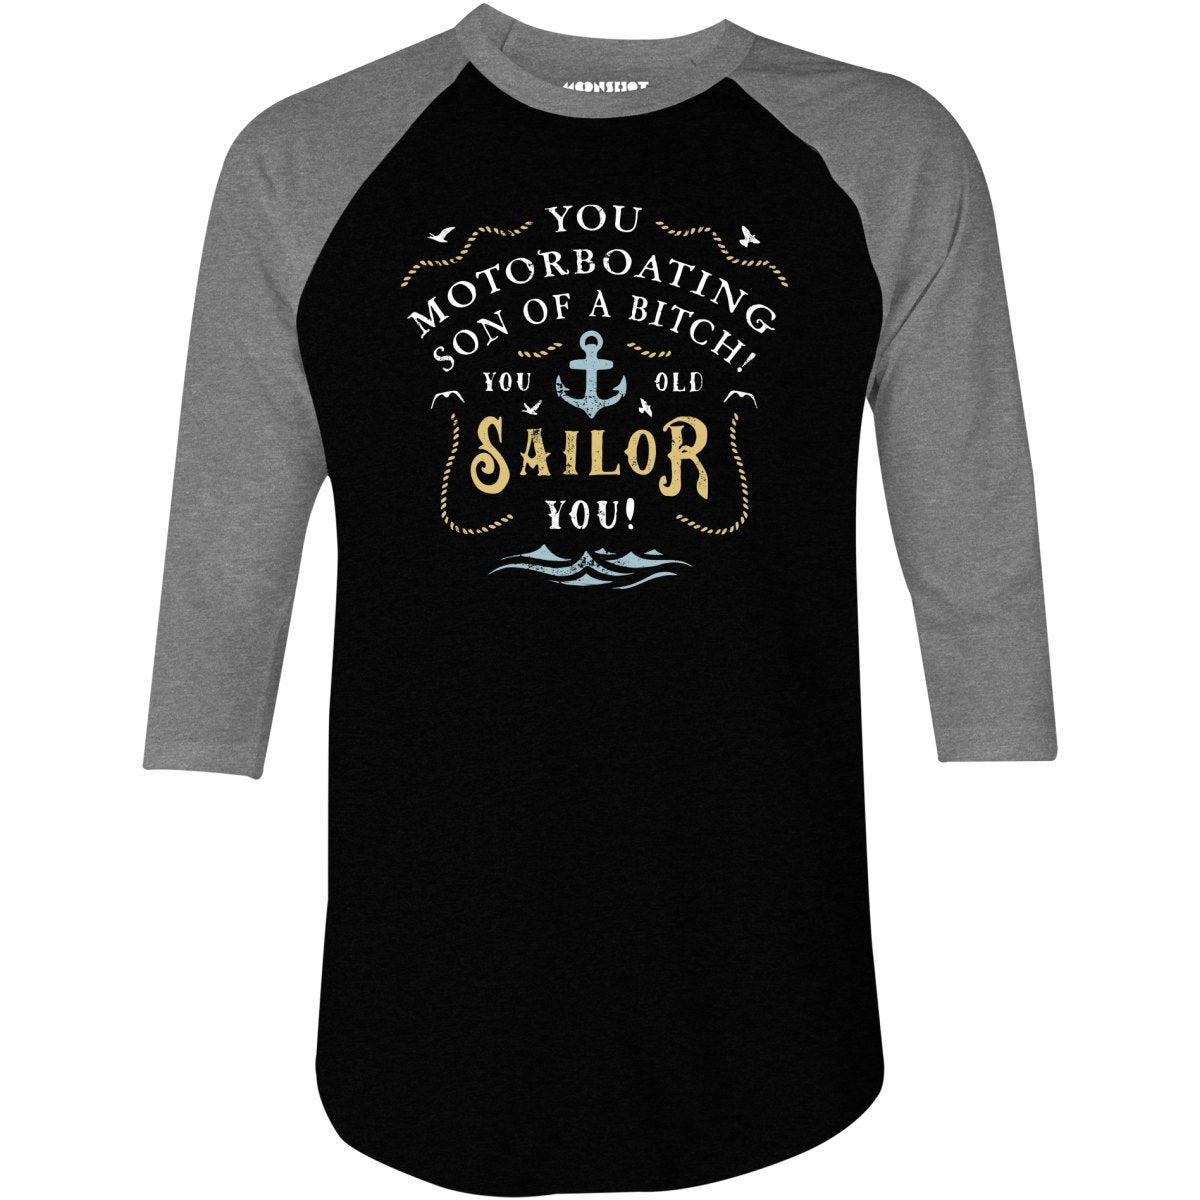 You Old Sailor You - 3/4 Sleeve Raglan T-Shirt